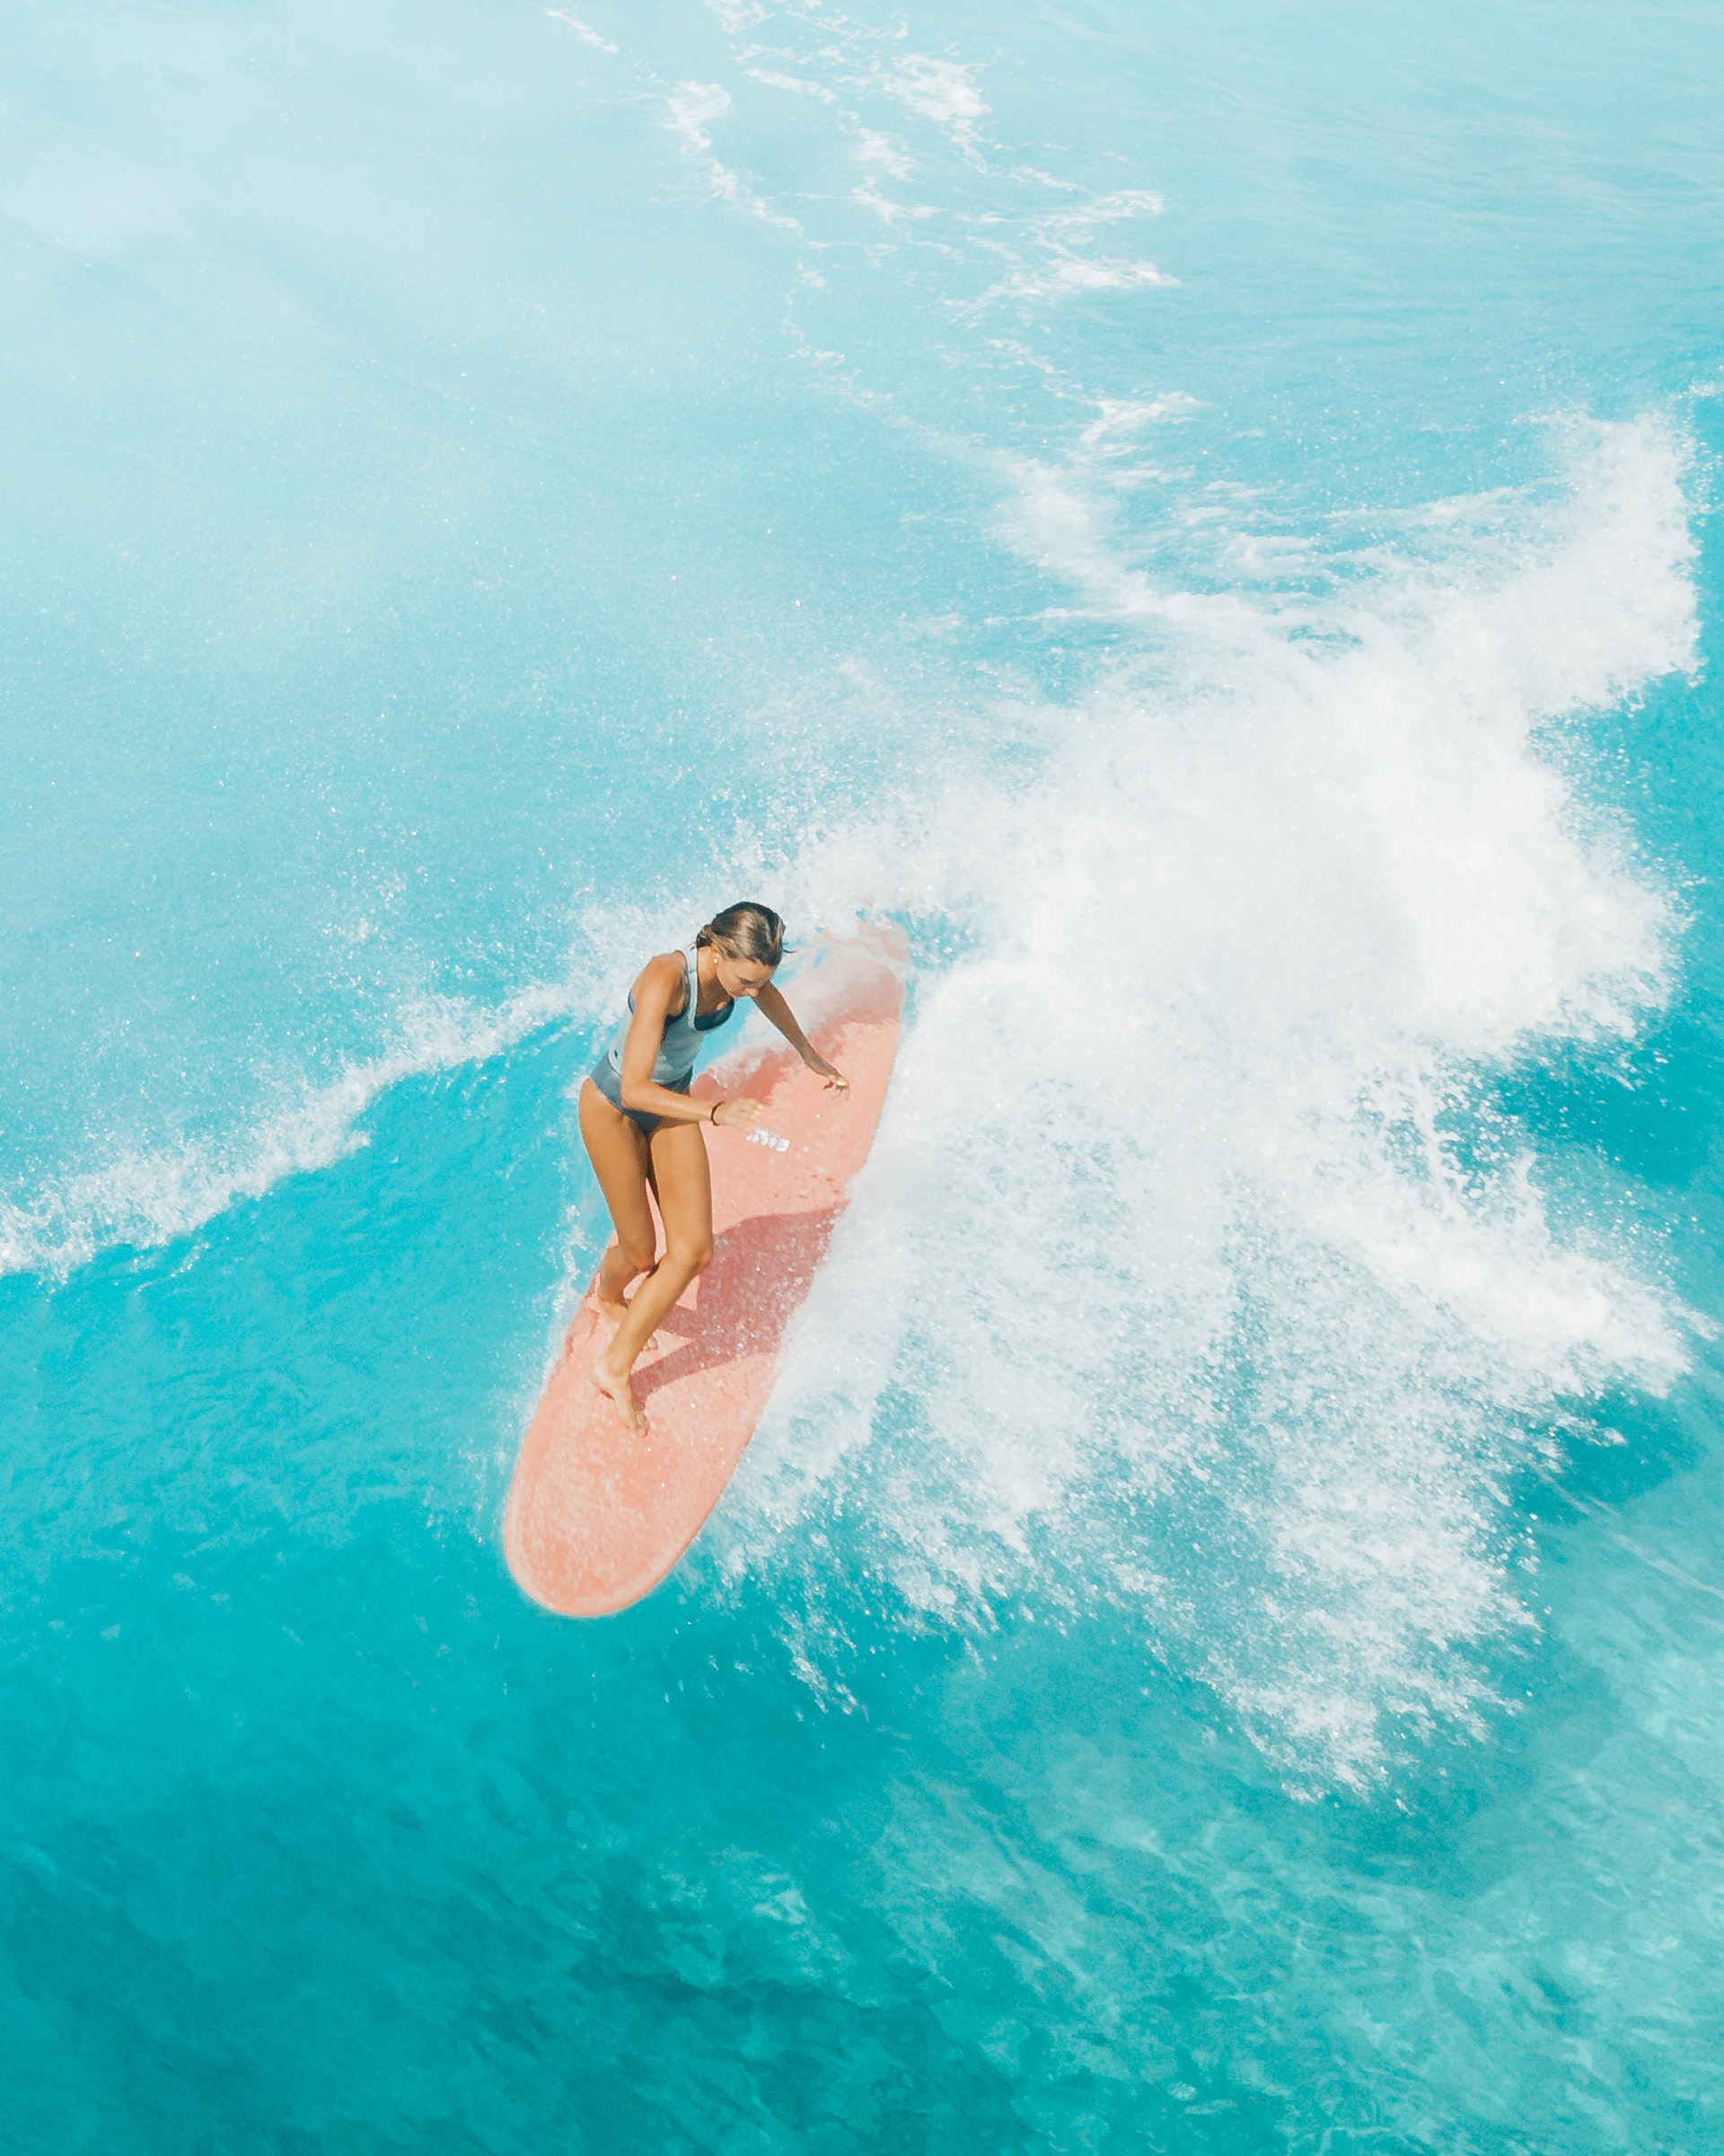 A woman surfing in Oahu